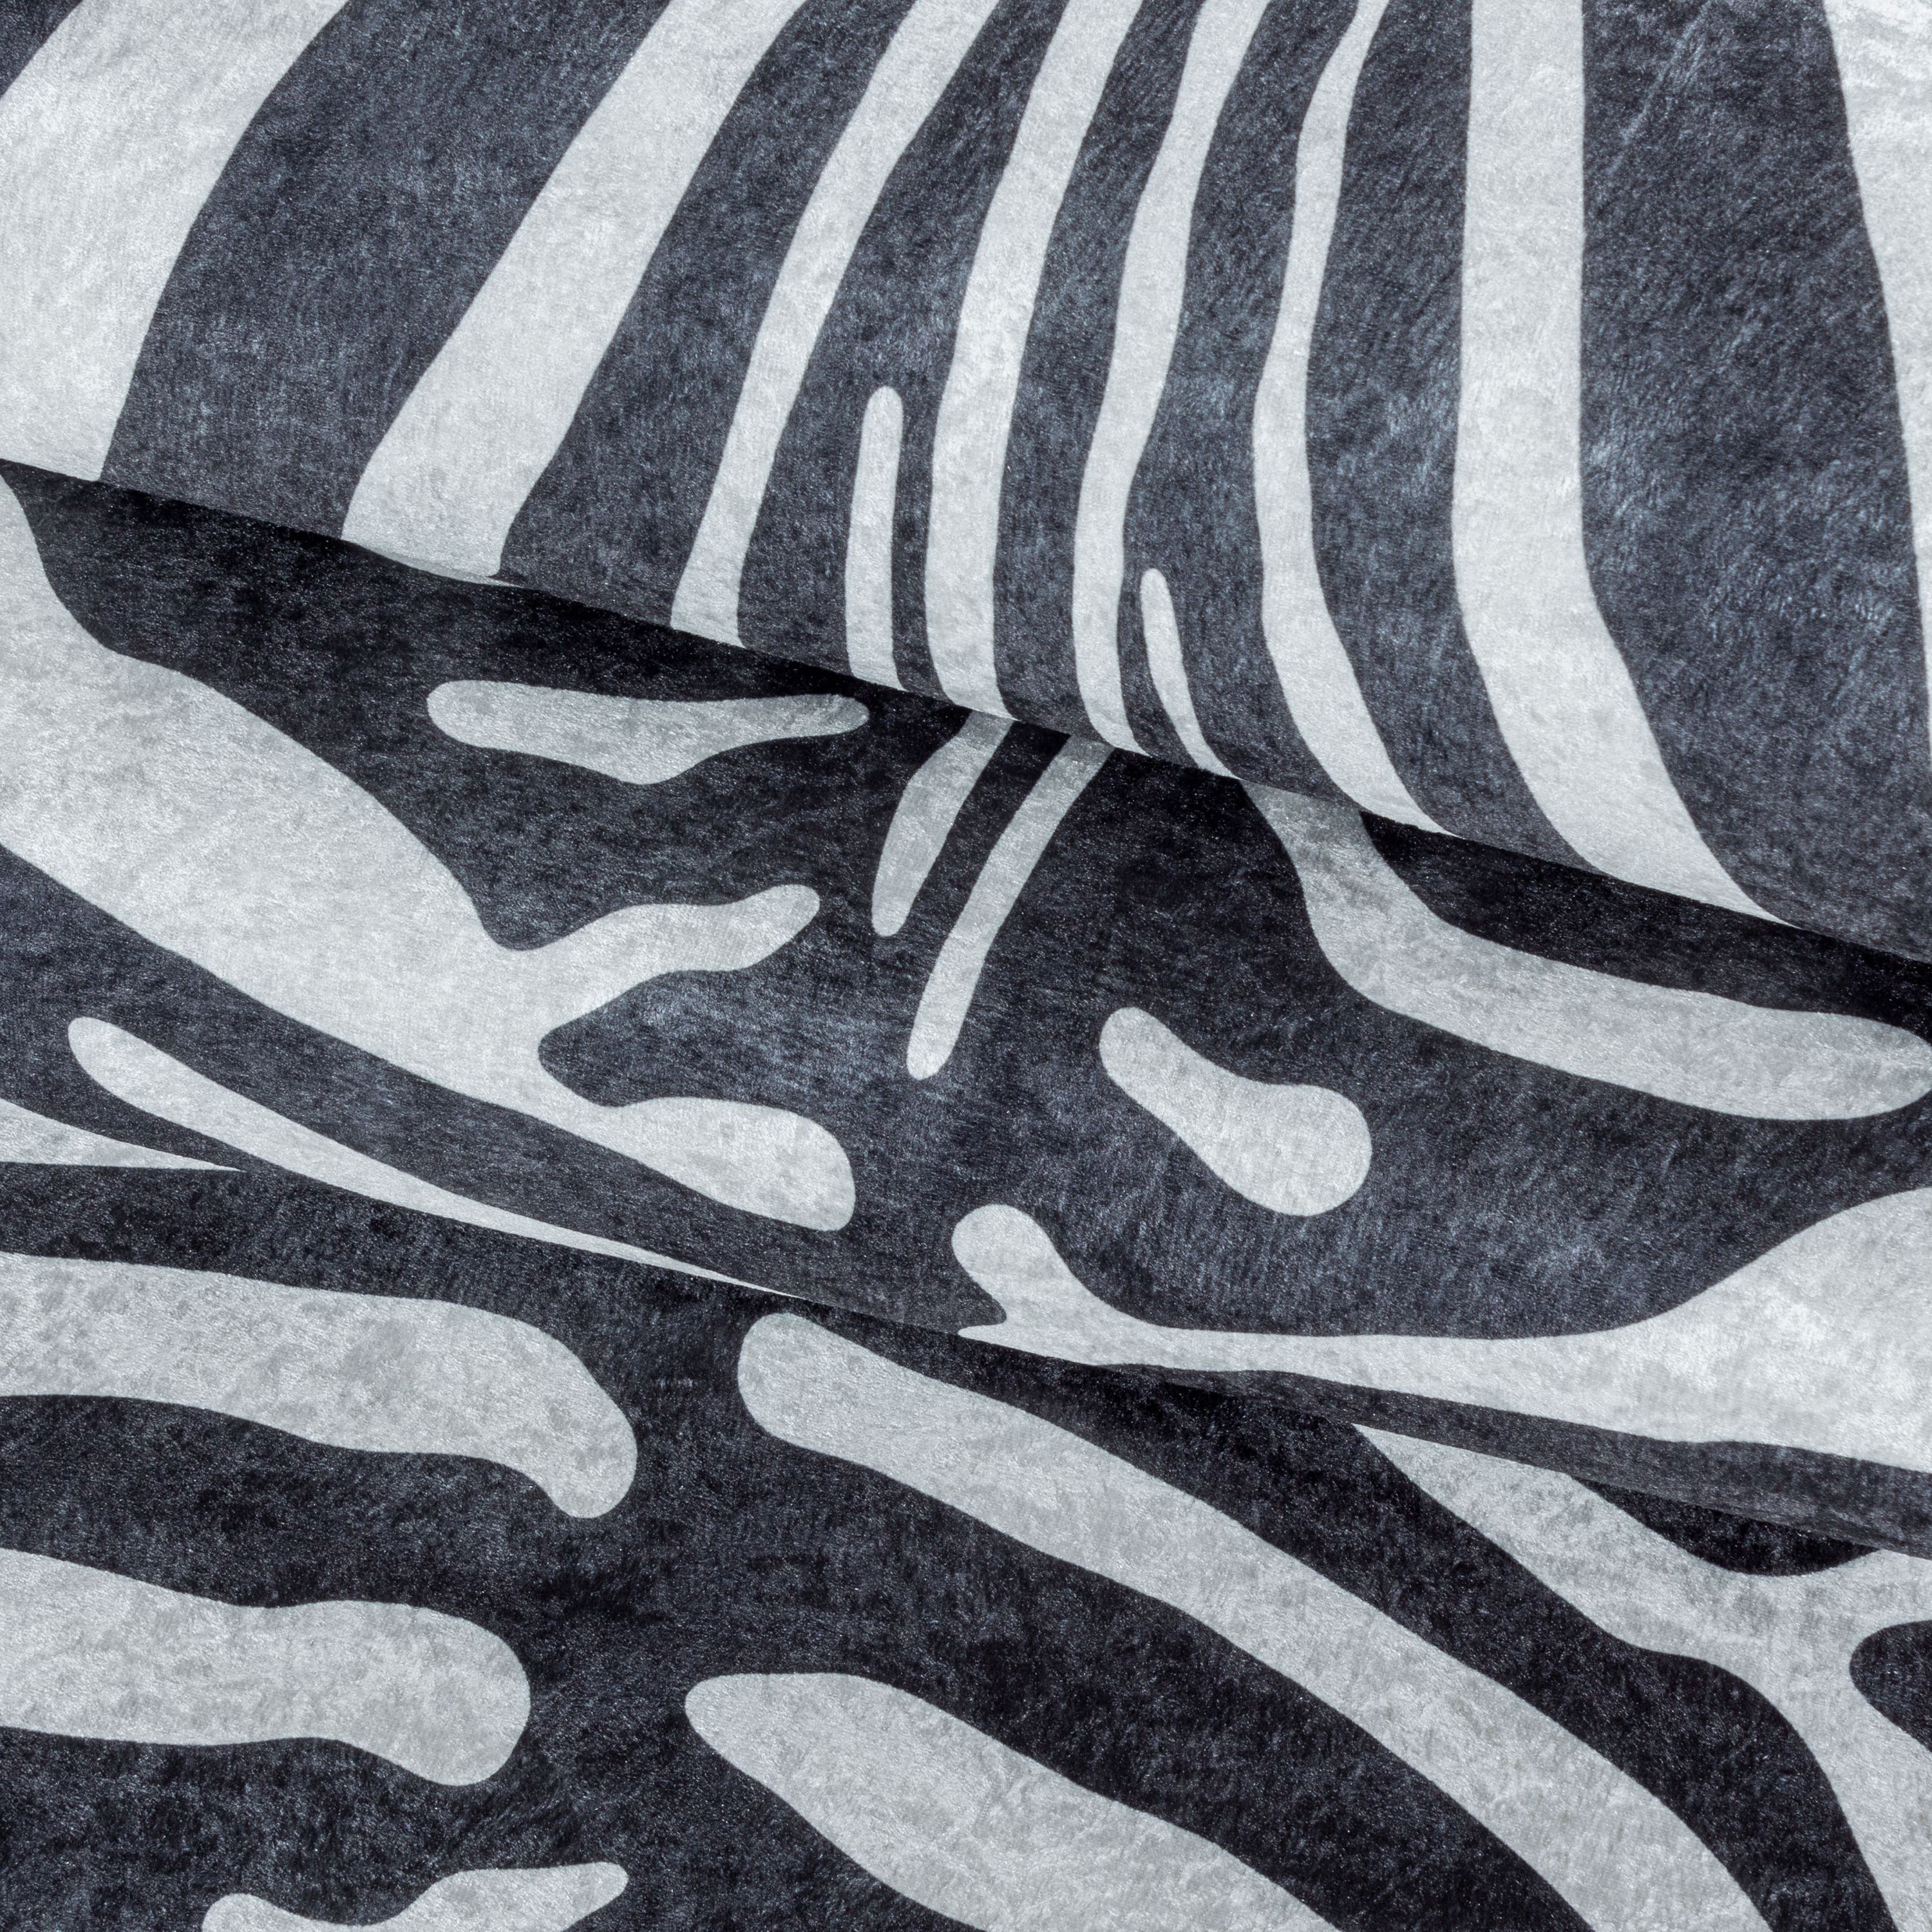 Teppich Flachgewebe Waschbar Wohnzimmerteppich Robust Zebra Fell Muster Schwarz